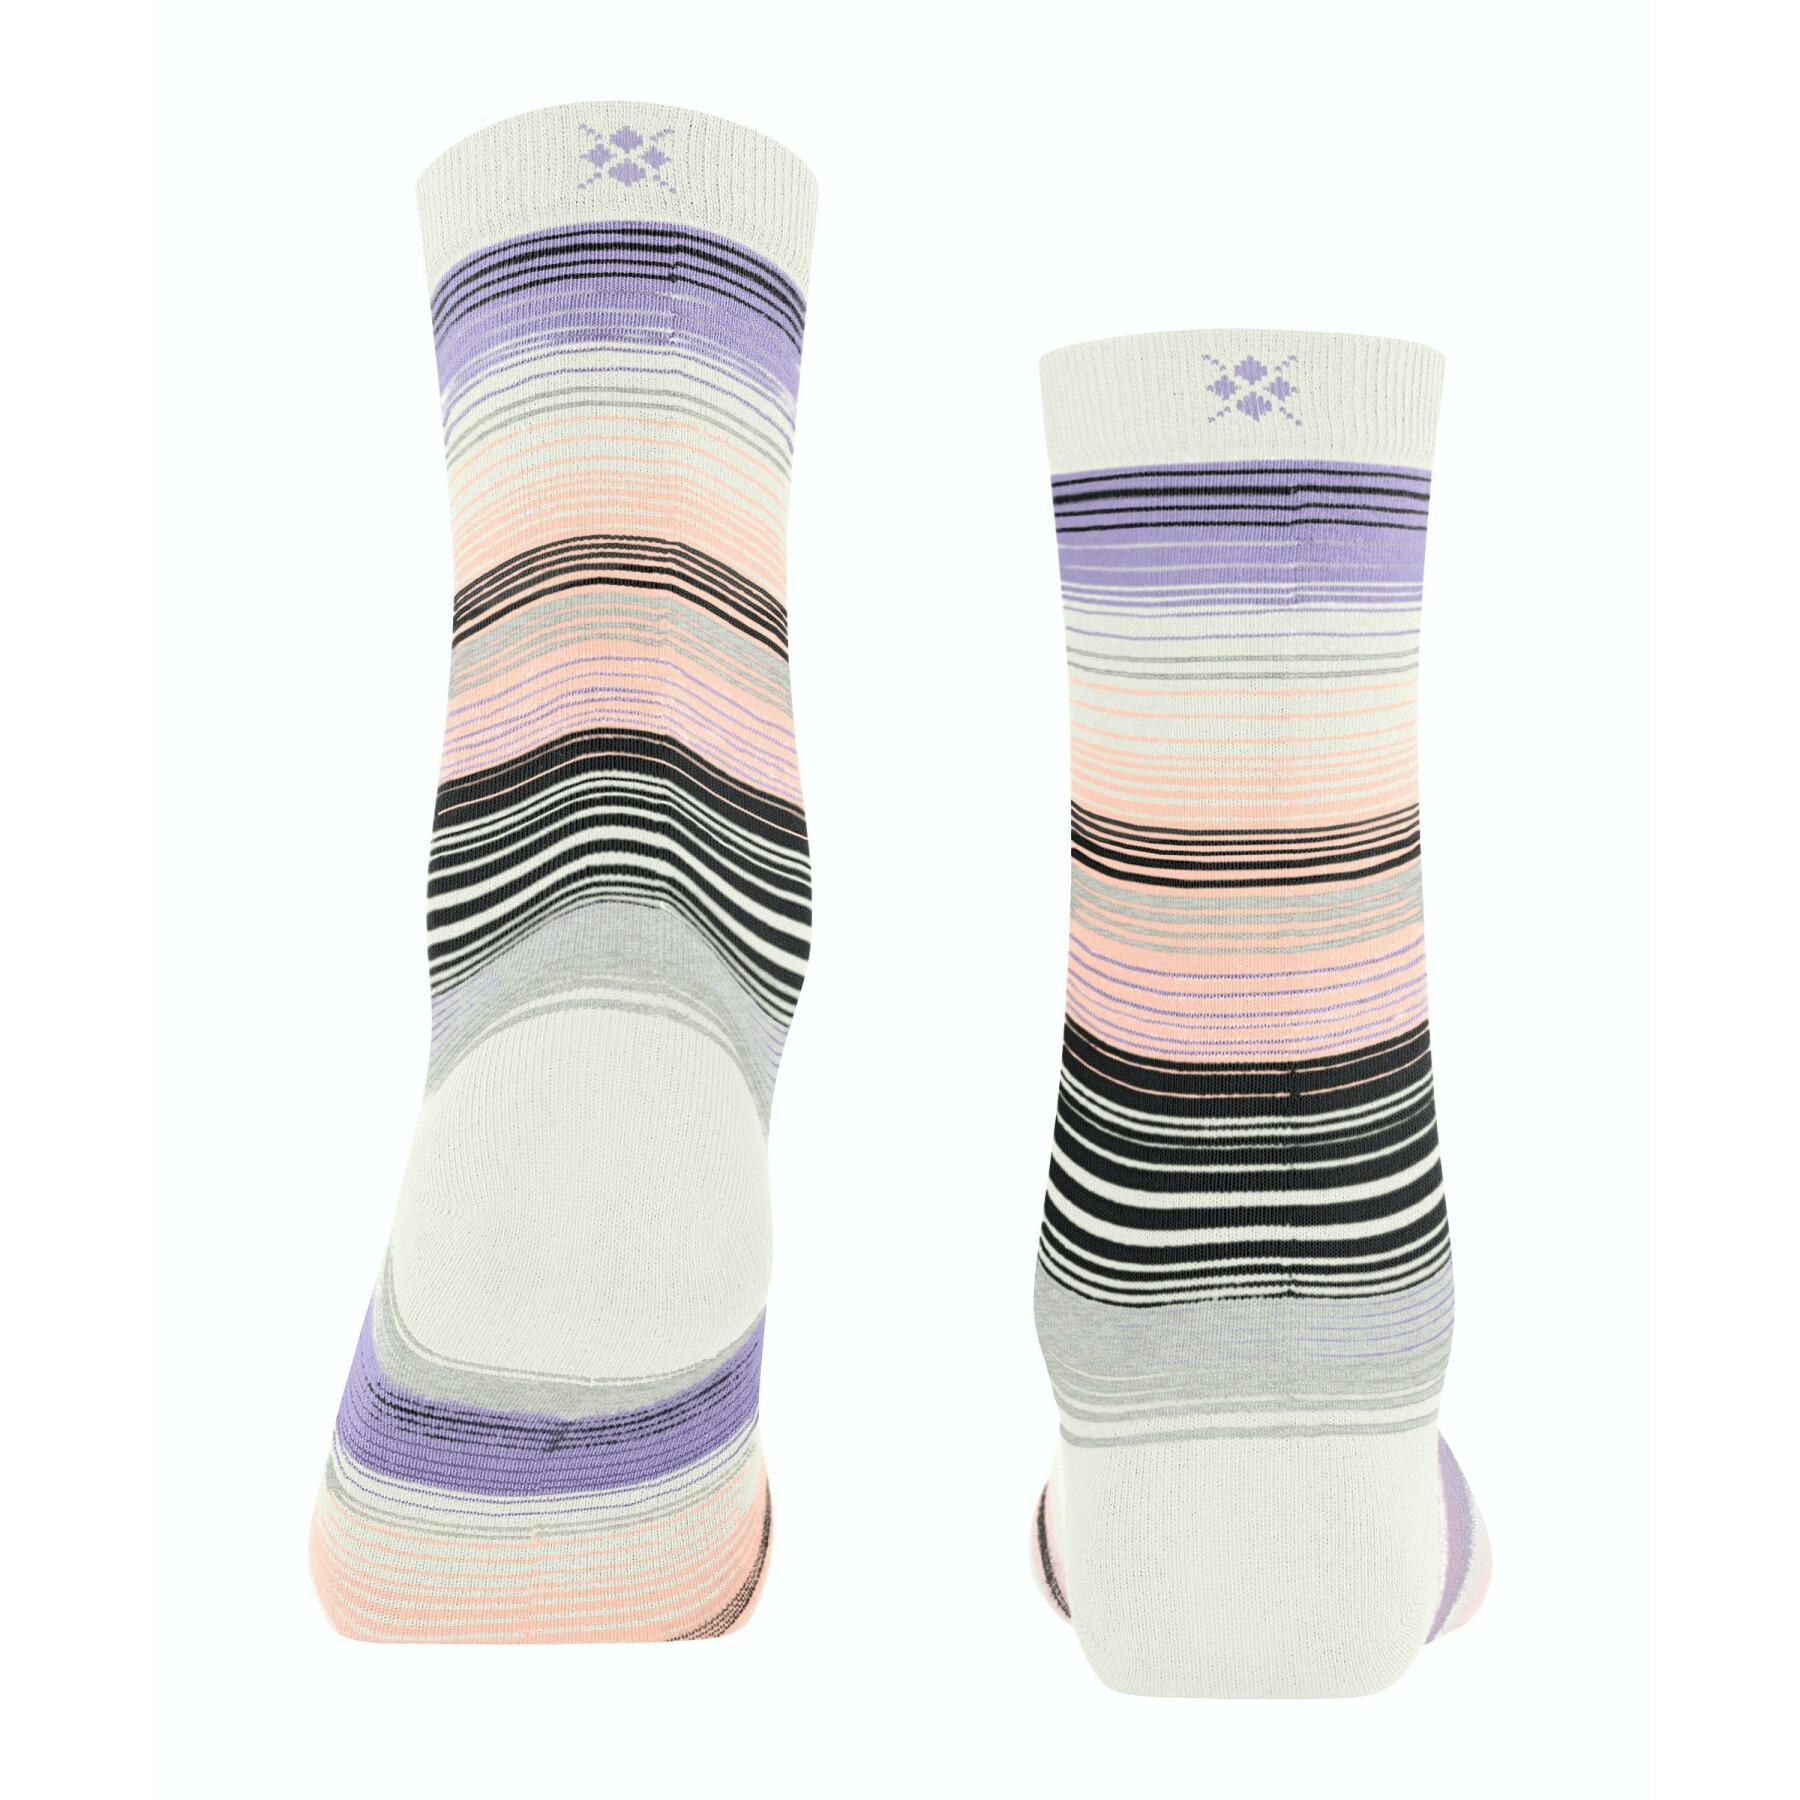 Socken für Frauen Burlington Stripe